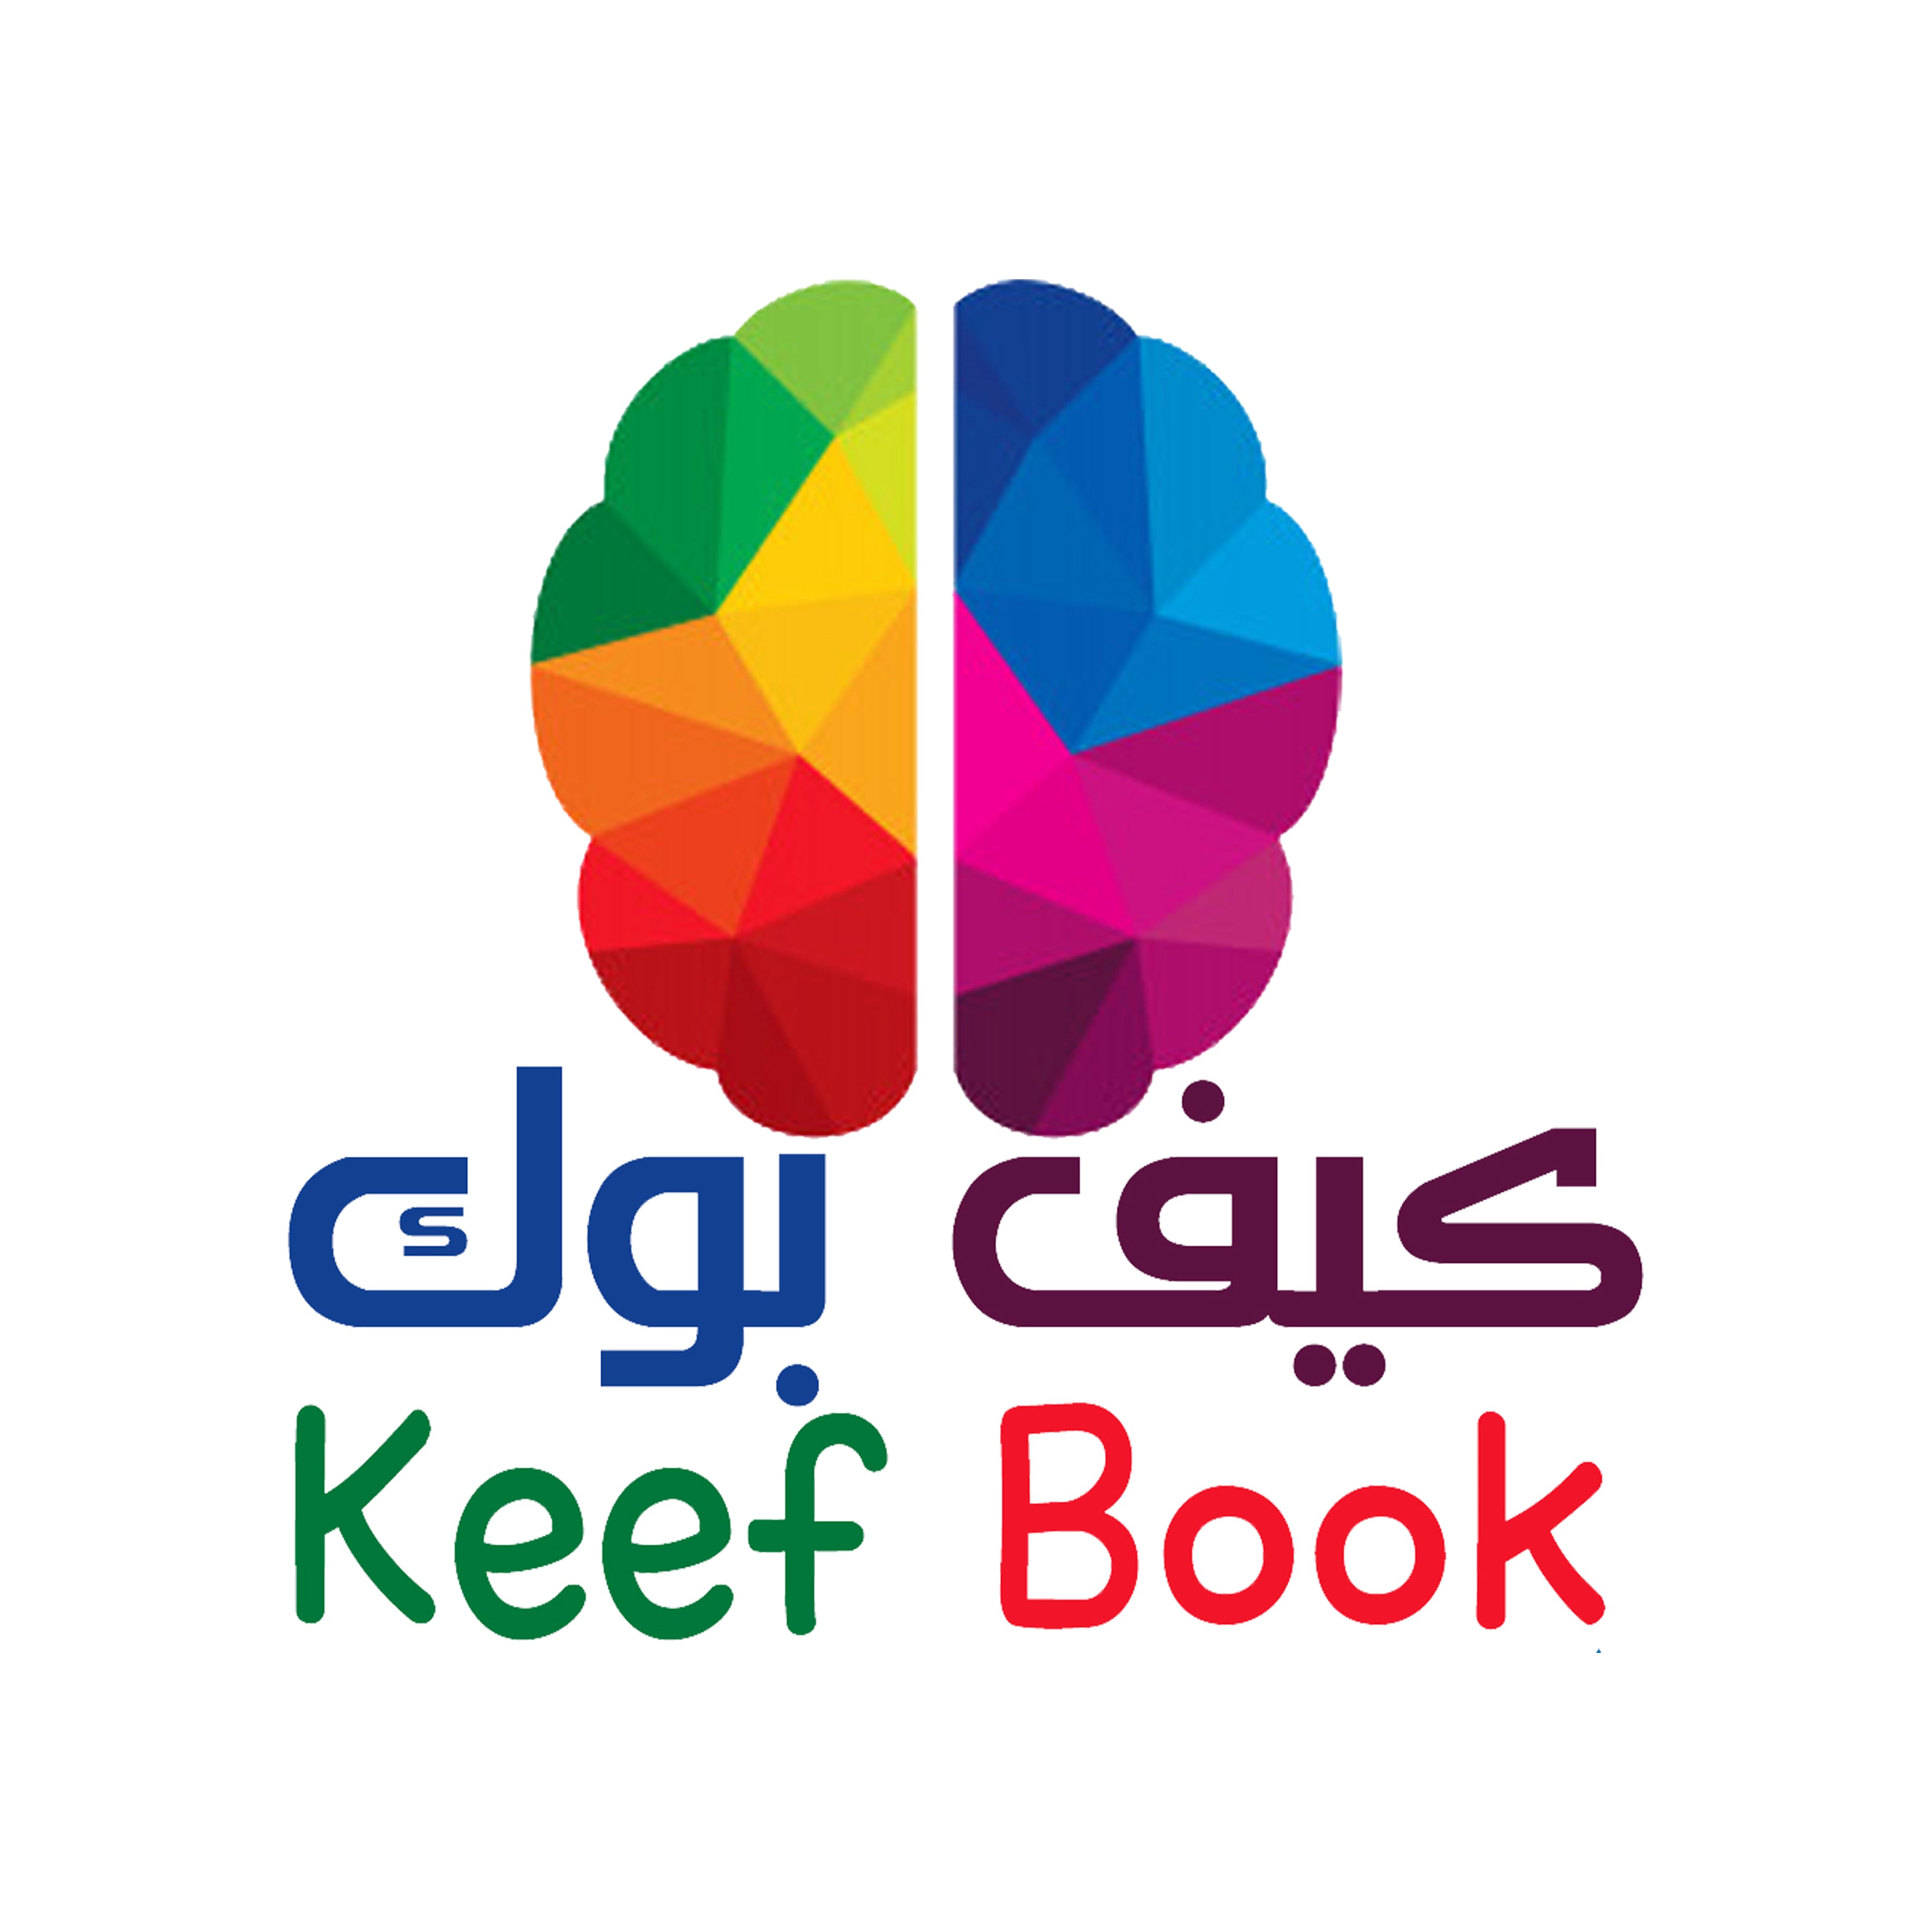 Keefbook – keefbook